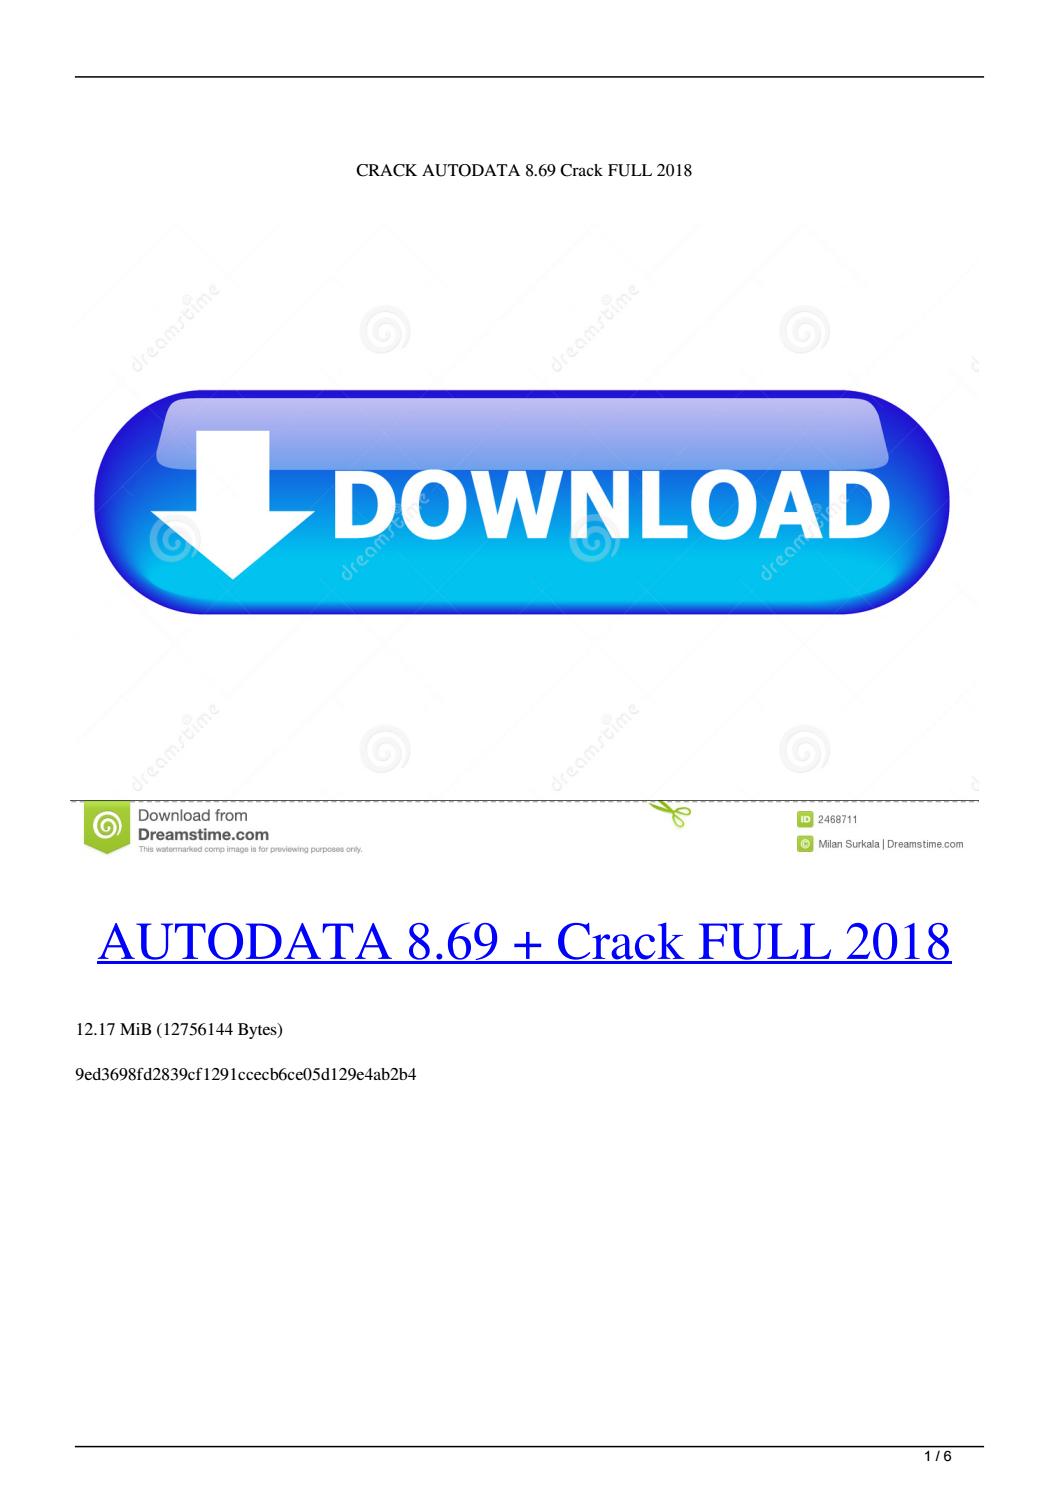 Autodata Enterprise 1.0 Download